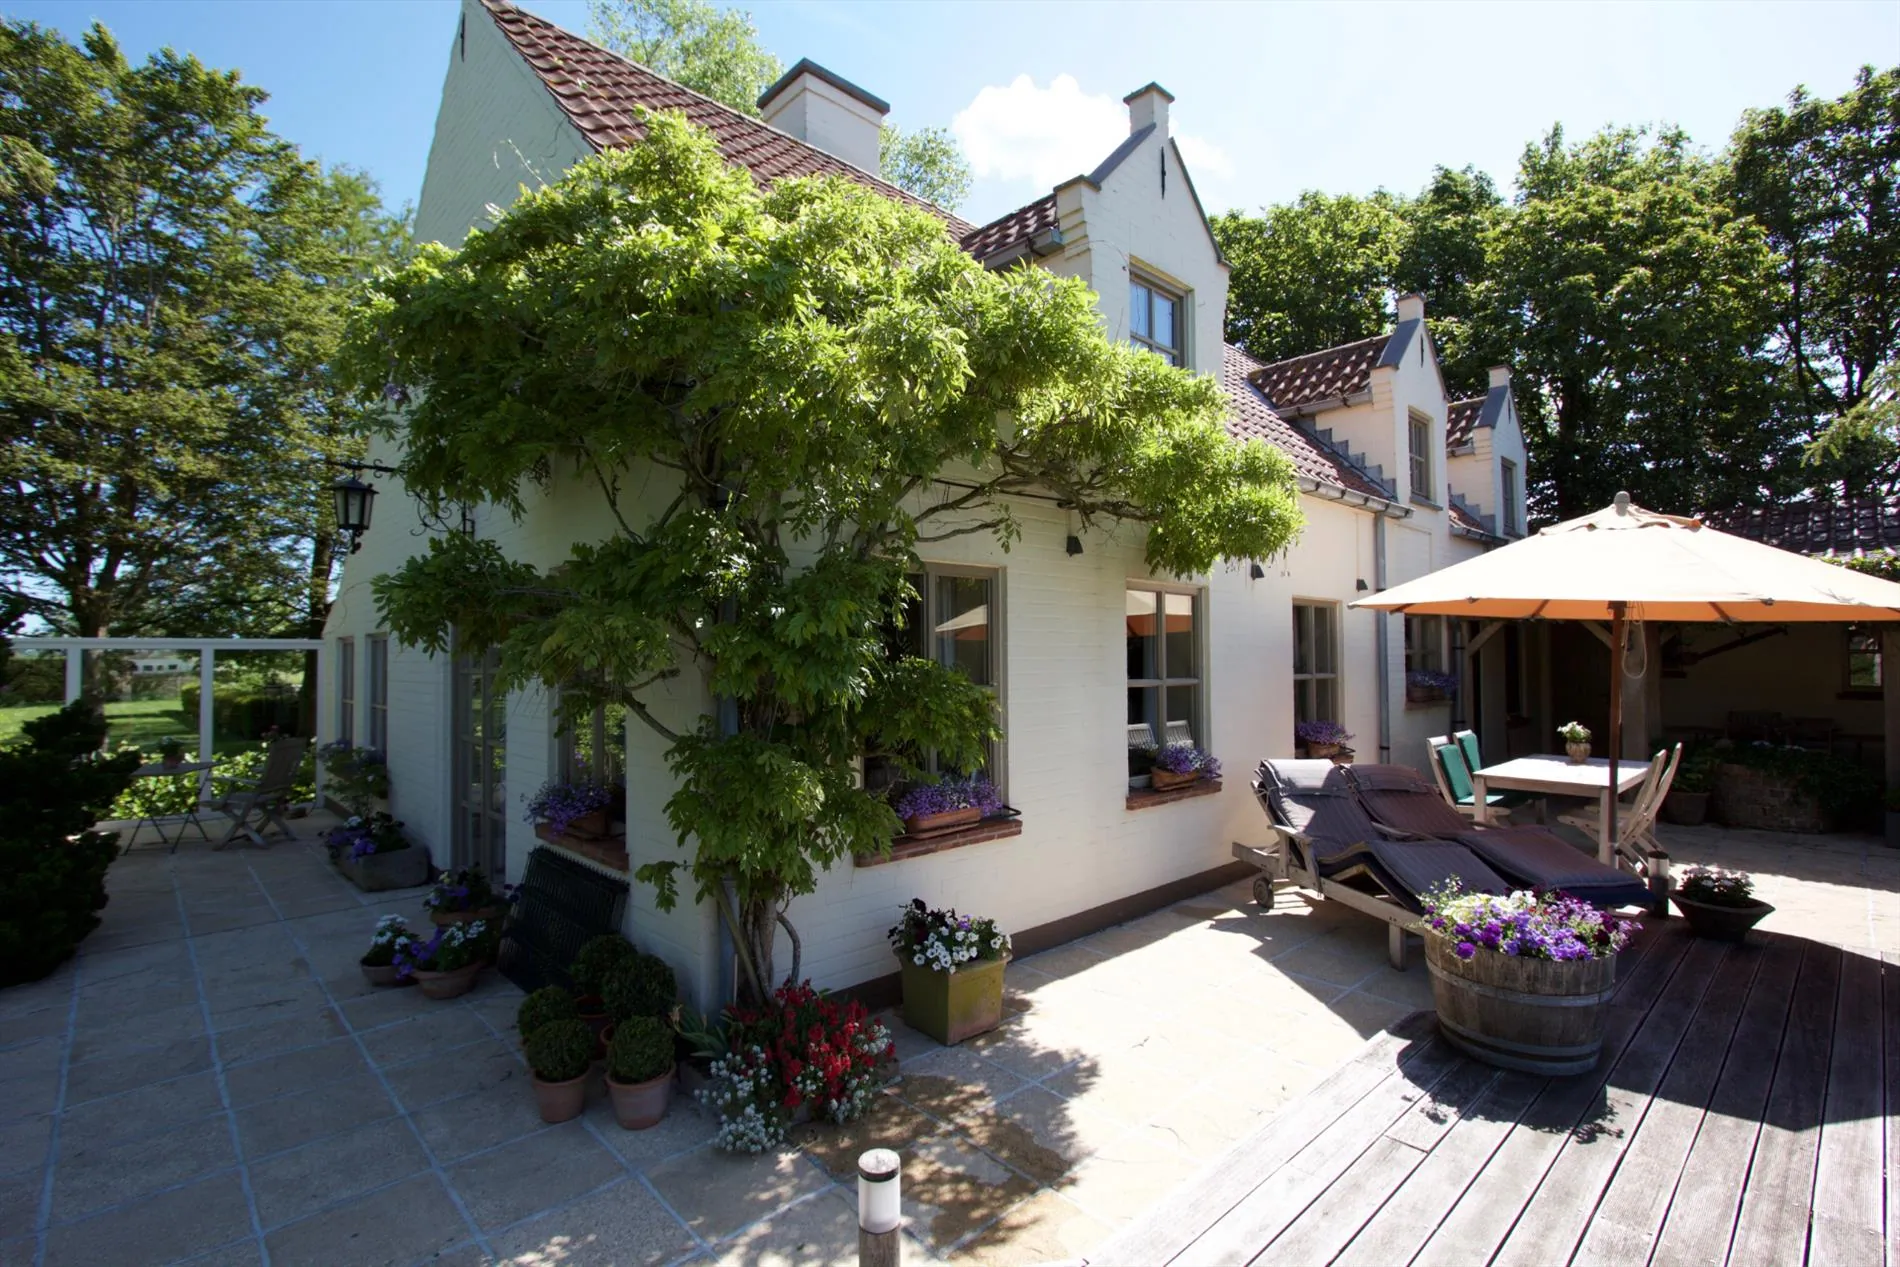  Uniek en idyllisch gelegen landhuis te Eernegem op 3402 m².